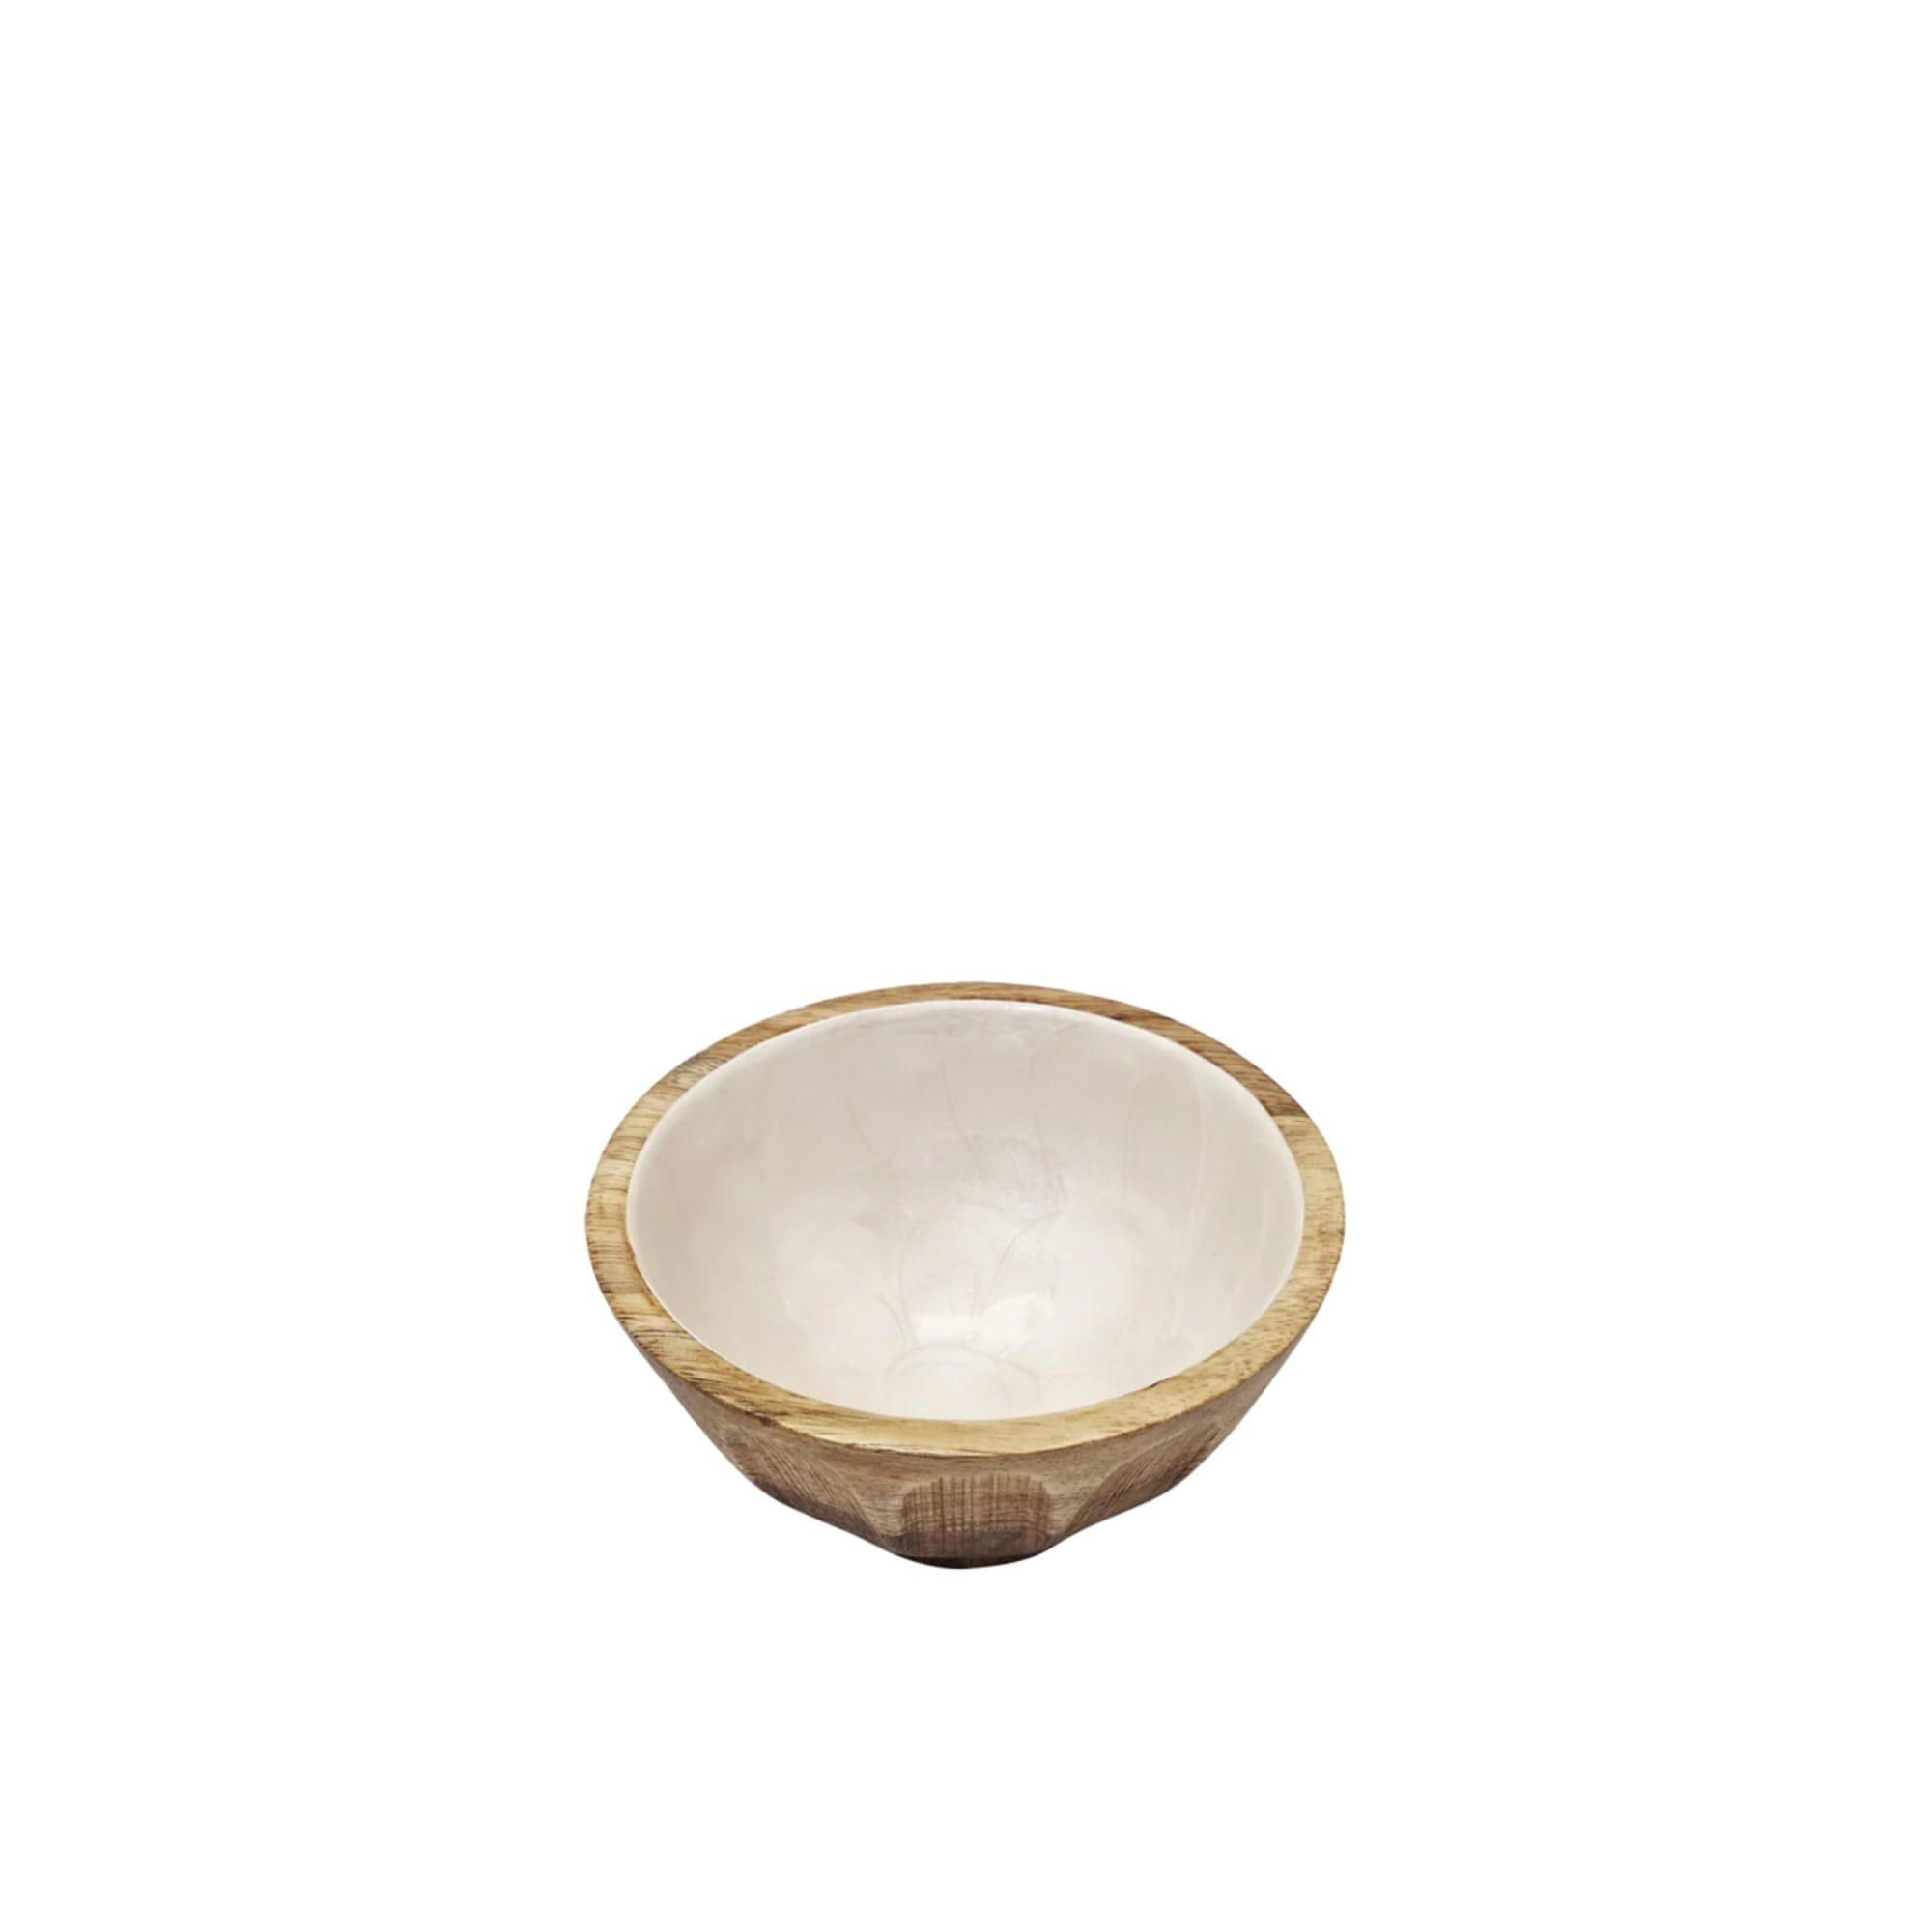 J.Elliot Home Como Rice Bowl 13.5cm Image 1